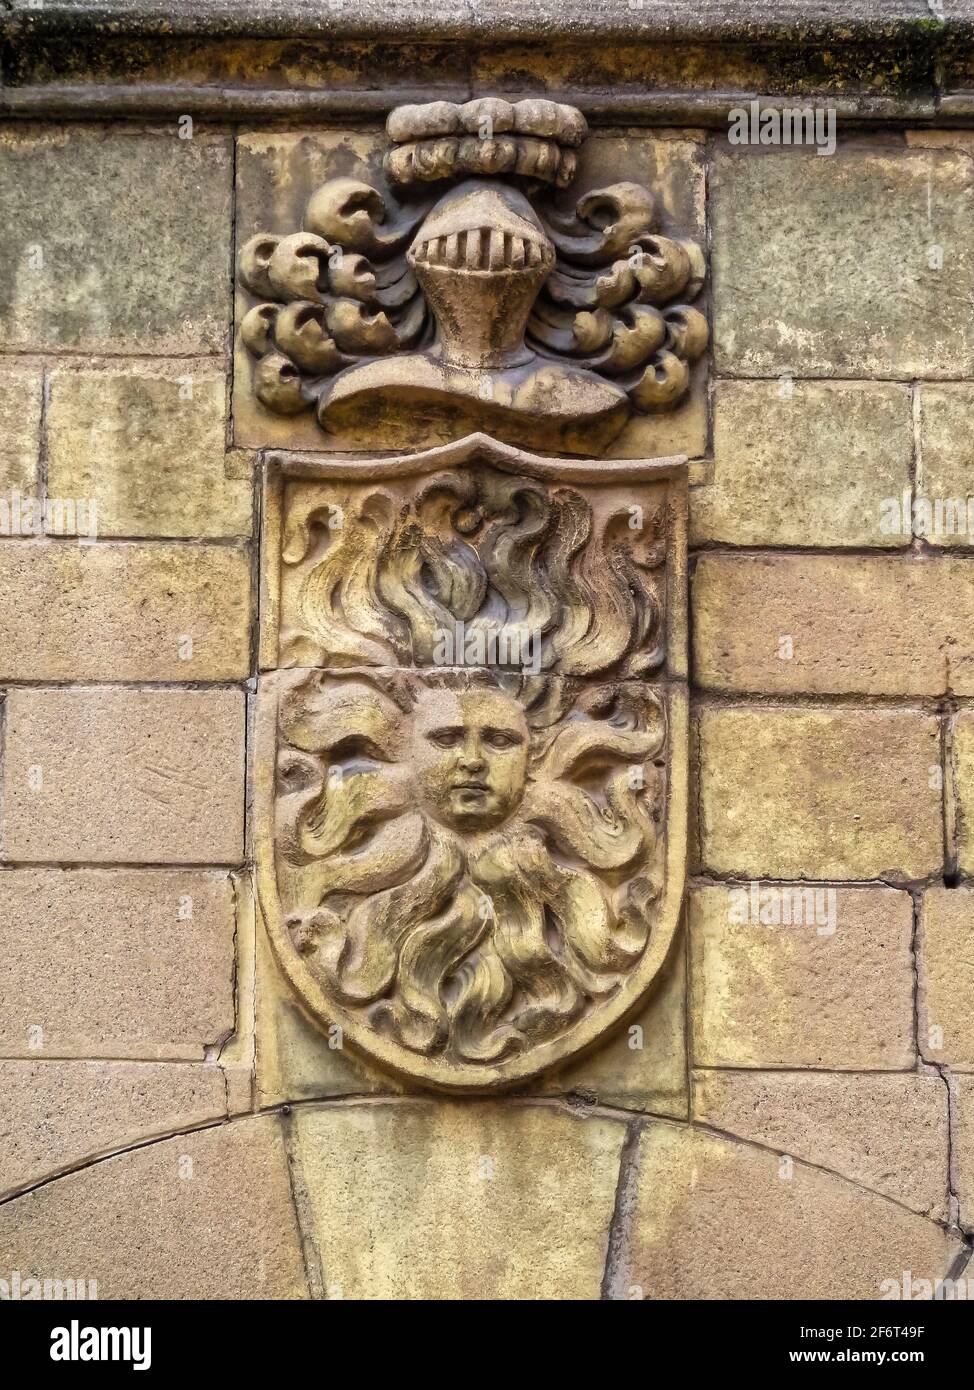 Escudo de armas. Pueblo Español. Barcelona. España.Réplica del escudo de armas de la Casa del Sol en Cáceres. Foto de stock